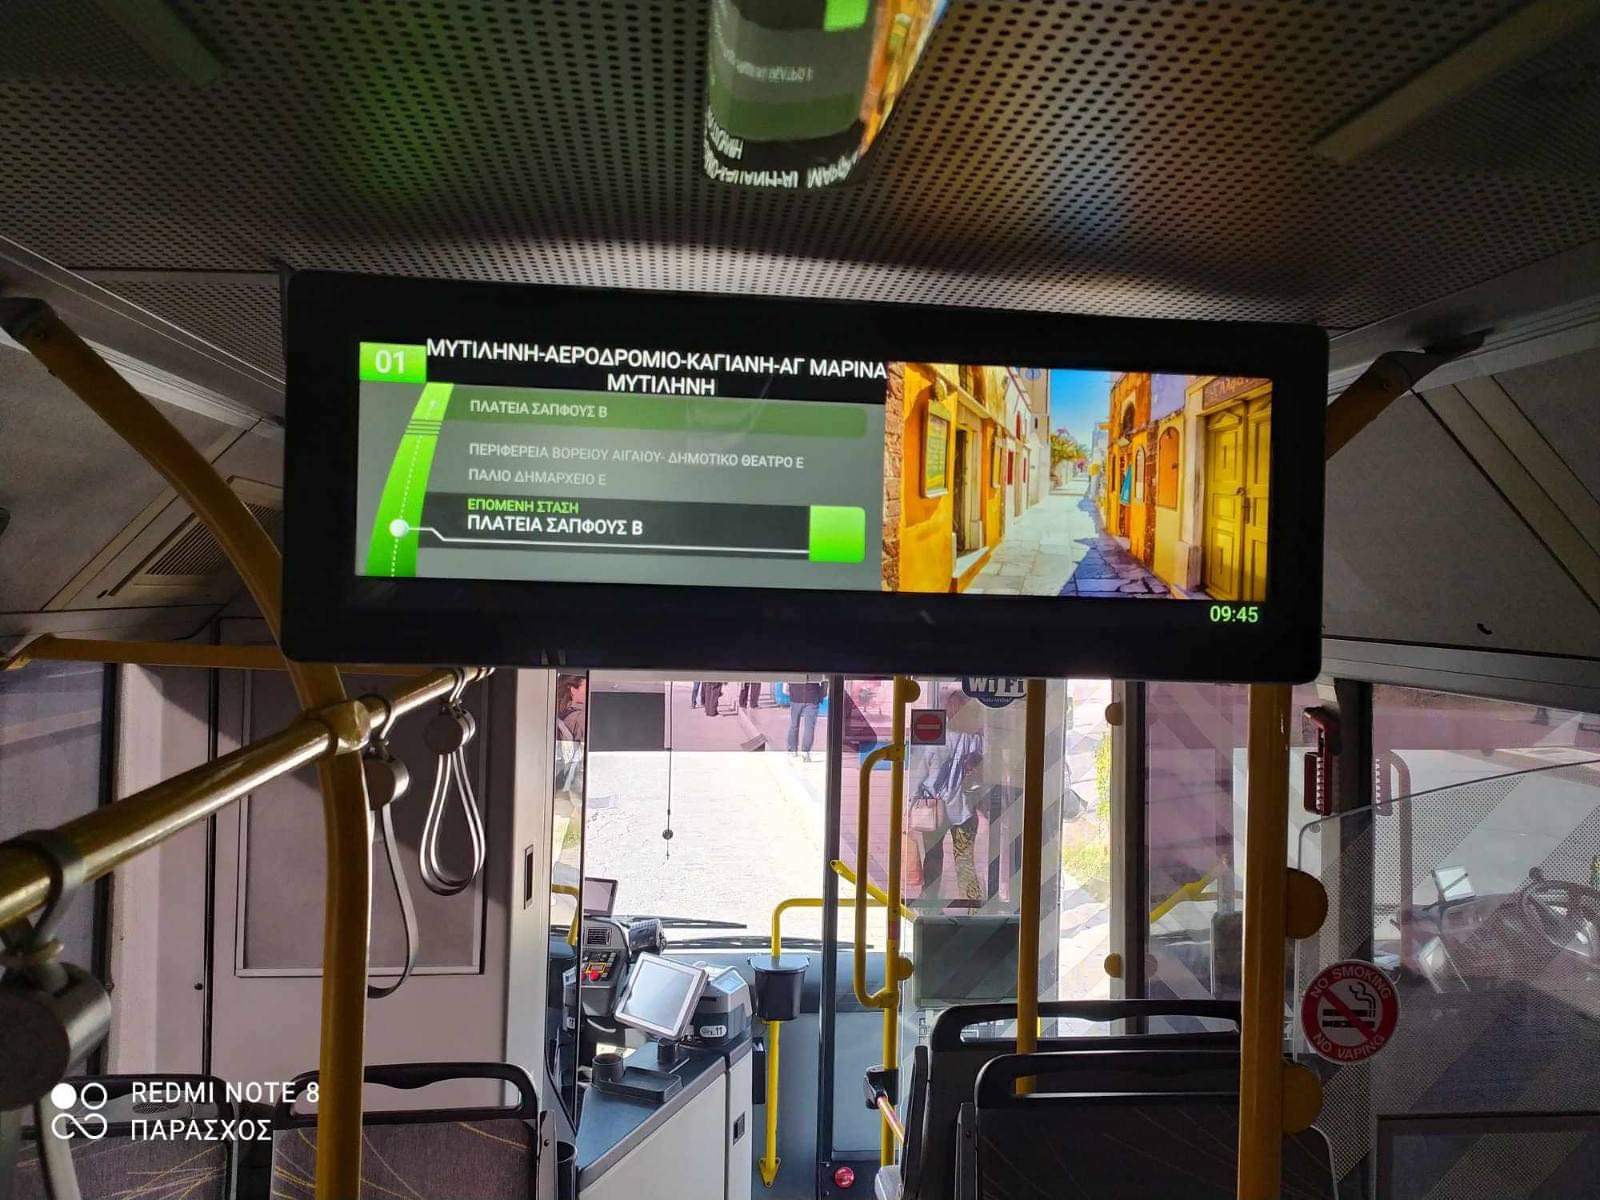 Εκσυγχρονίζονται τα Αστικά ΚΤΕΛ – Οθόνες στα λεωφορεία για τις διαδρομές